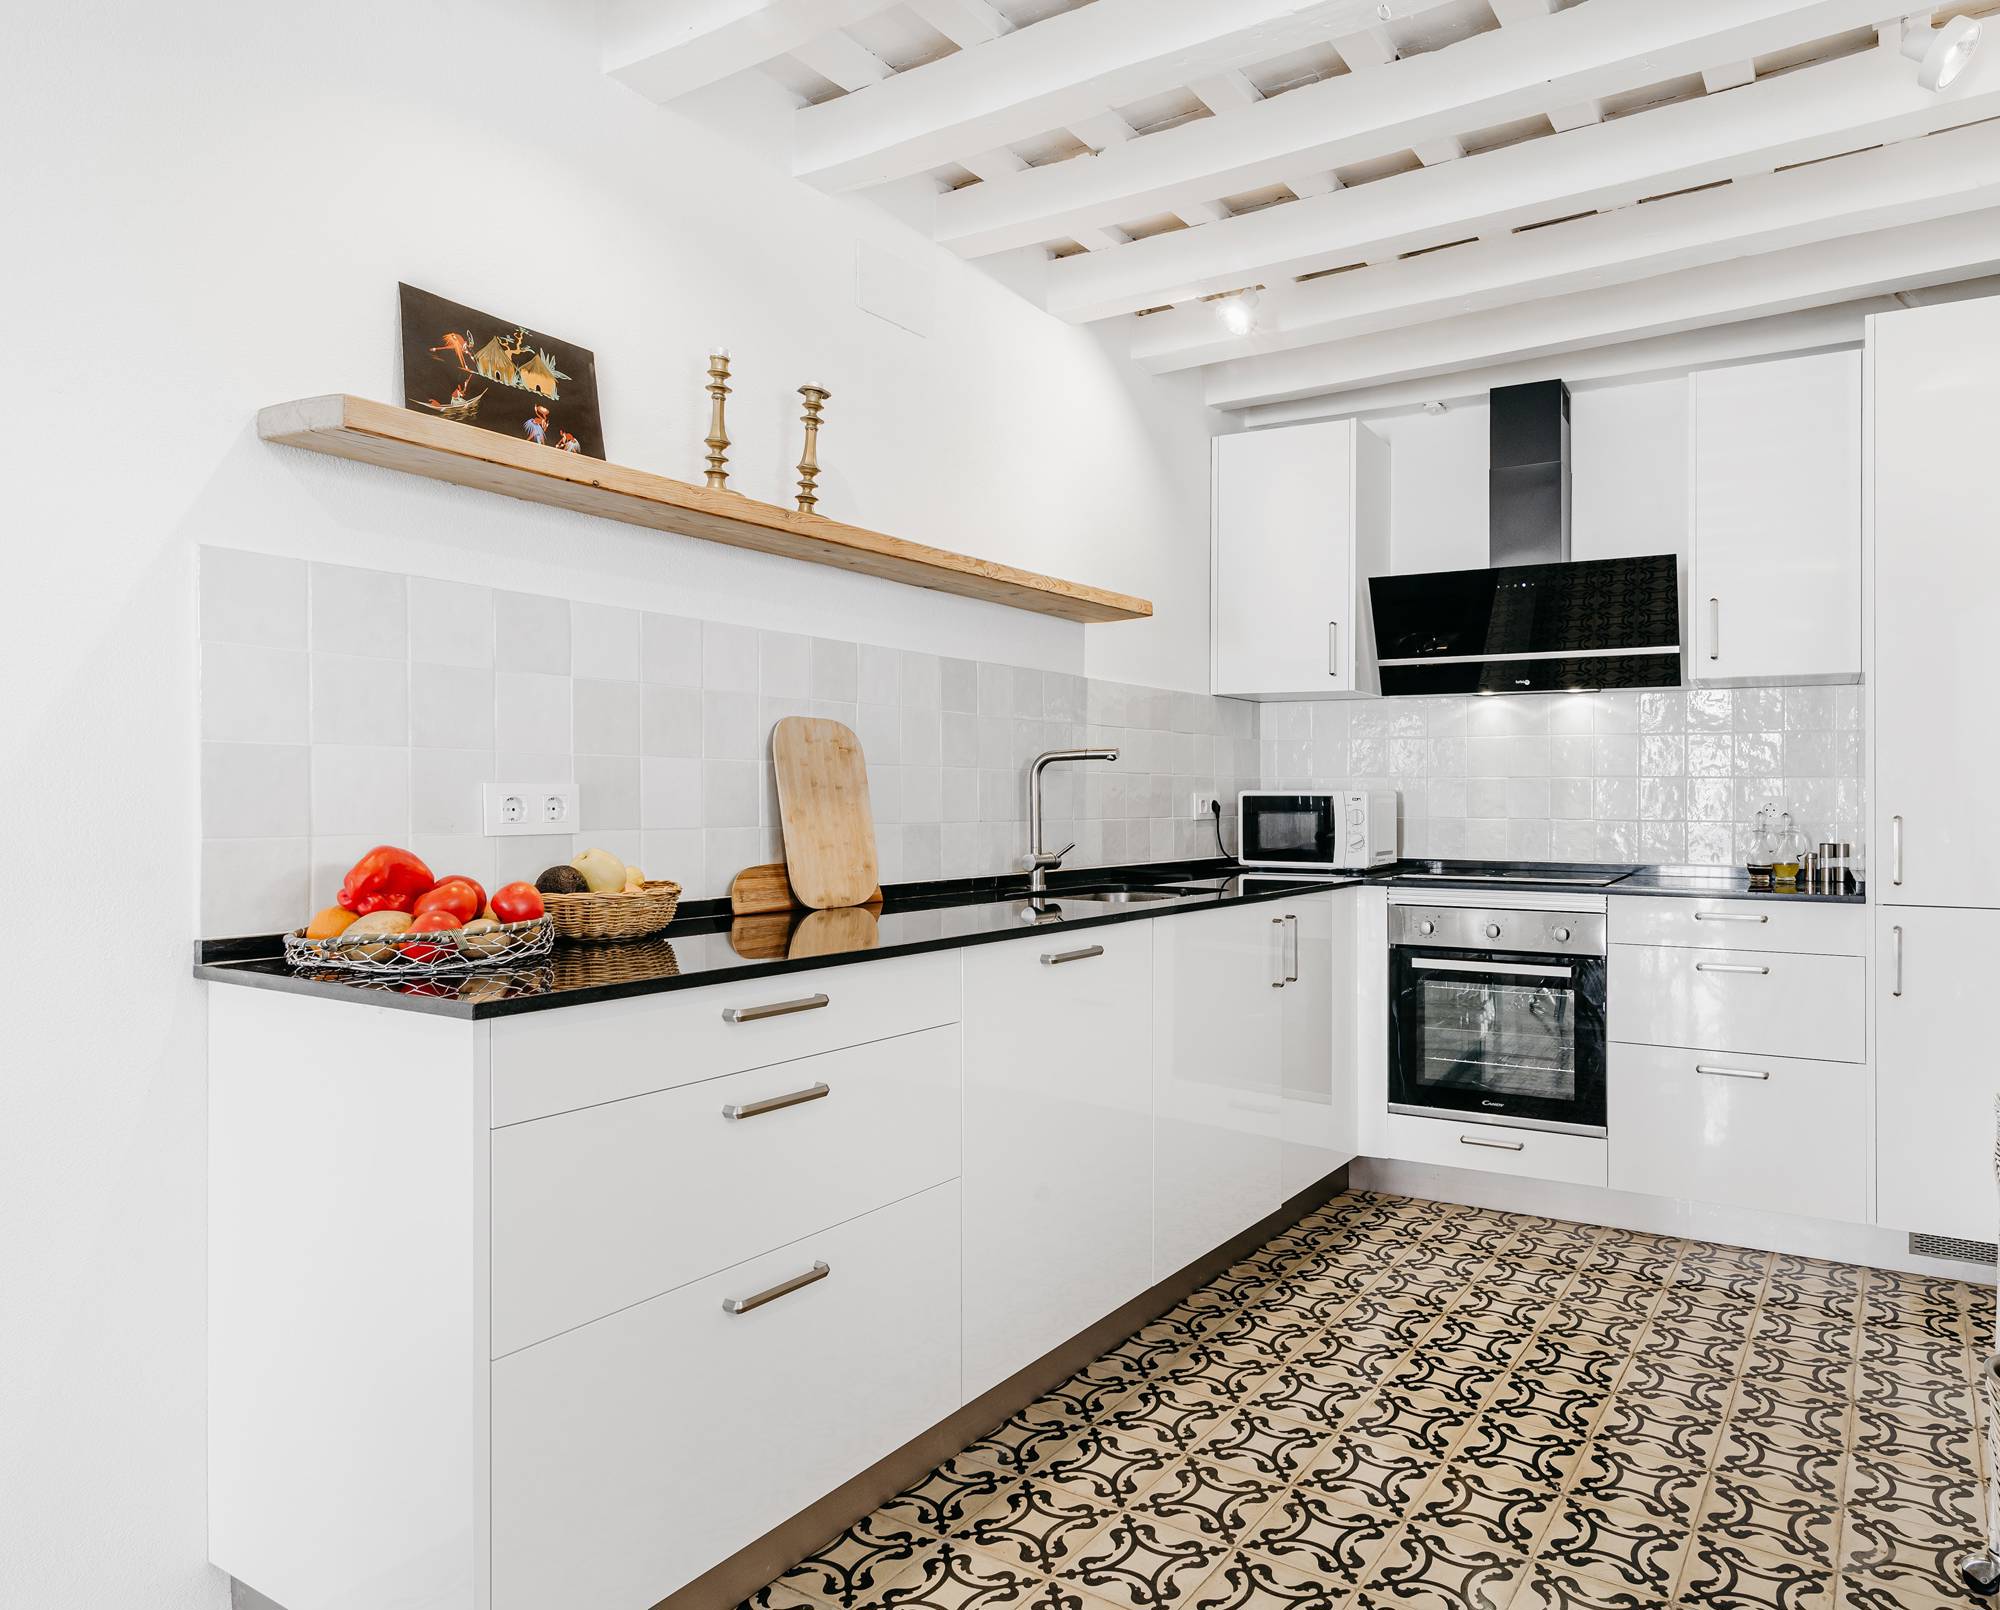 Una cocina moderna con muebles blancos, vigas en el techo y baldosas hidráulicas en el suelo.